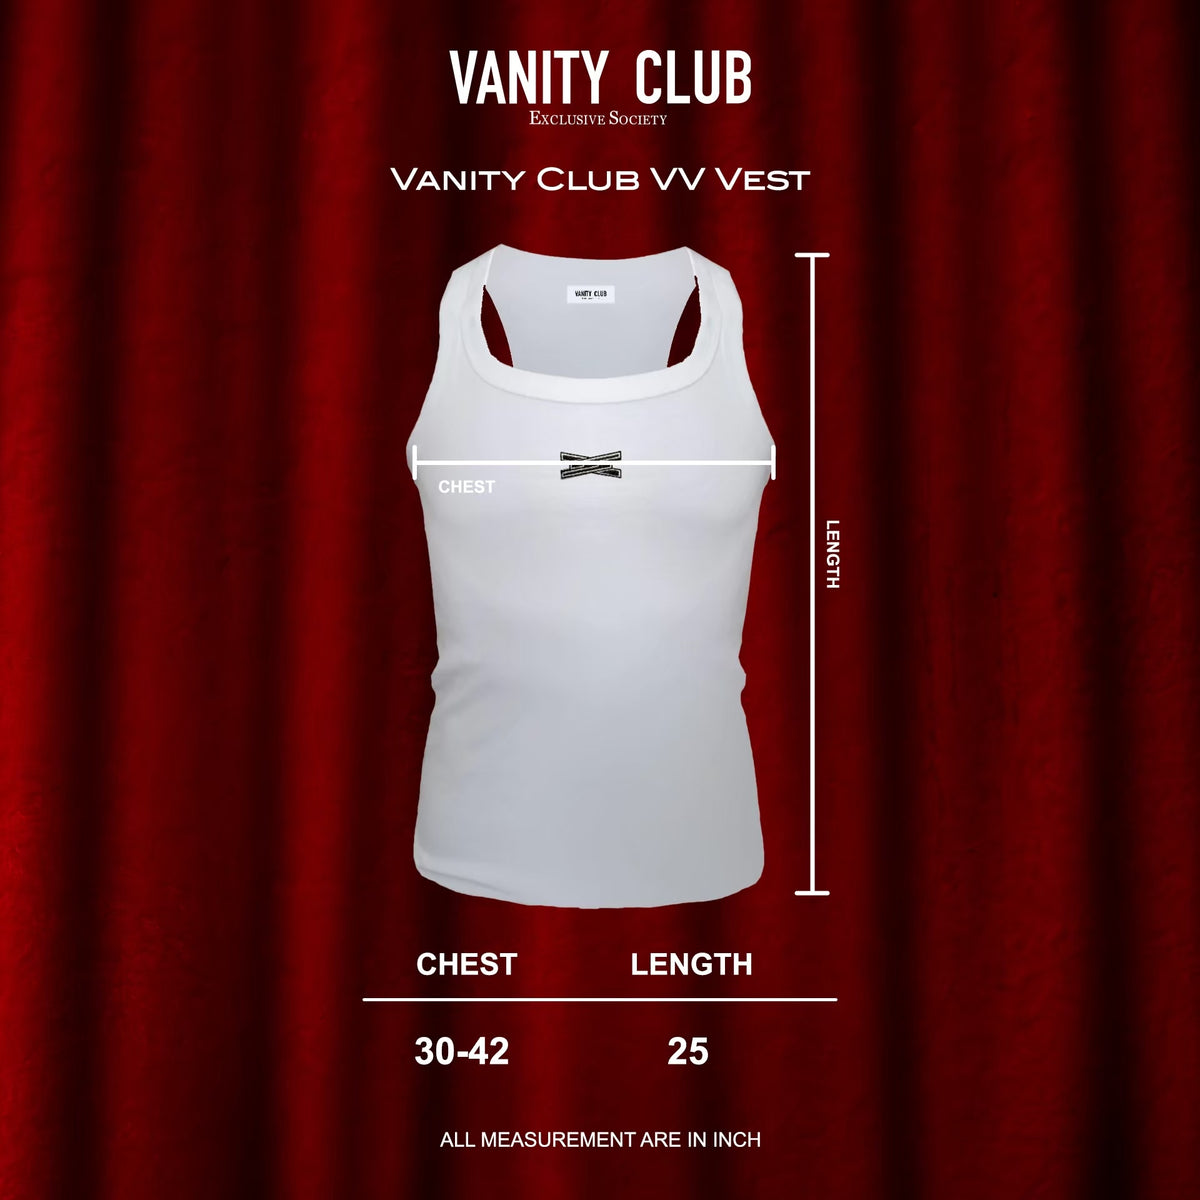 Vanity Club VV Vest